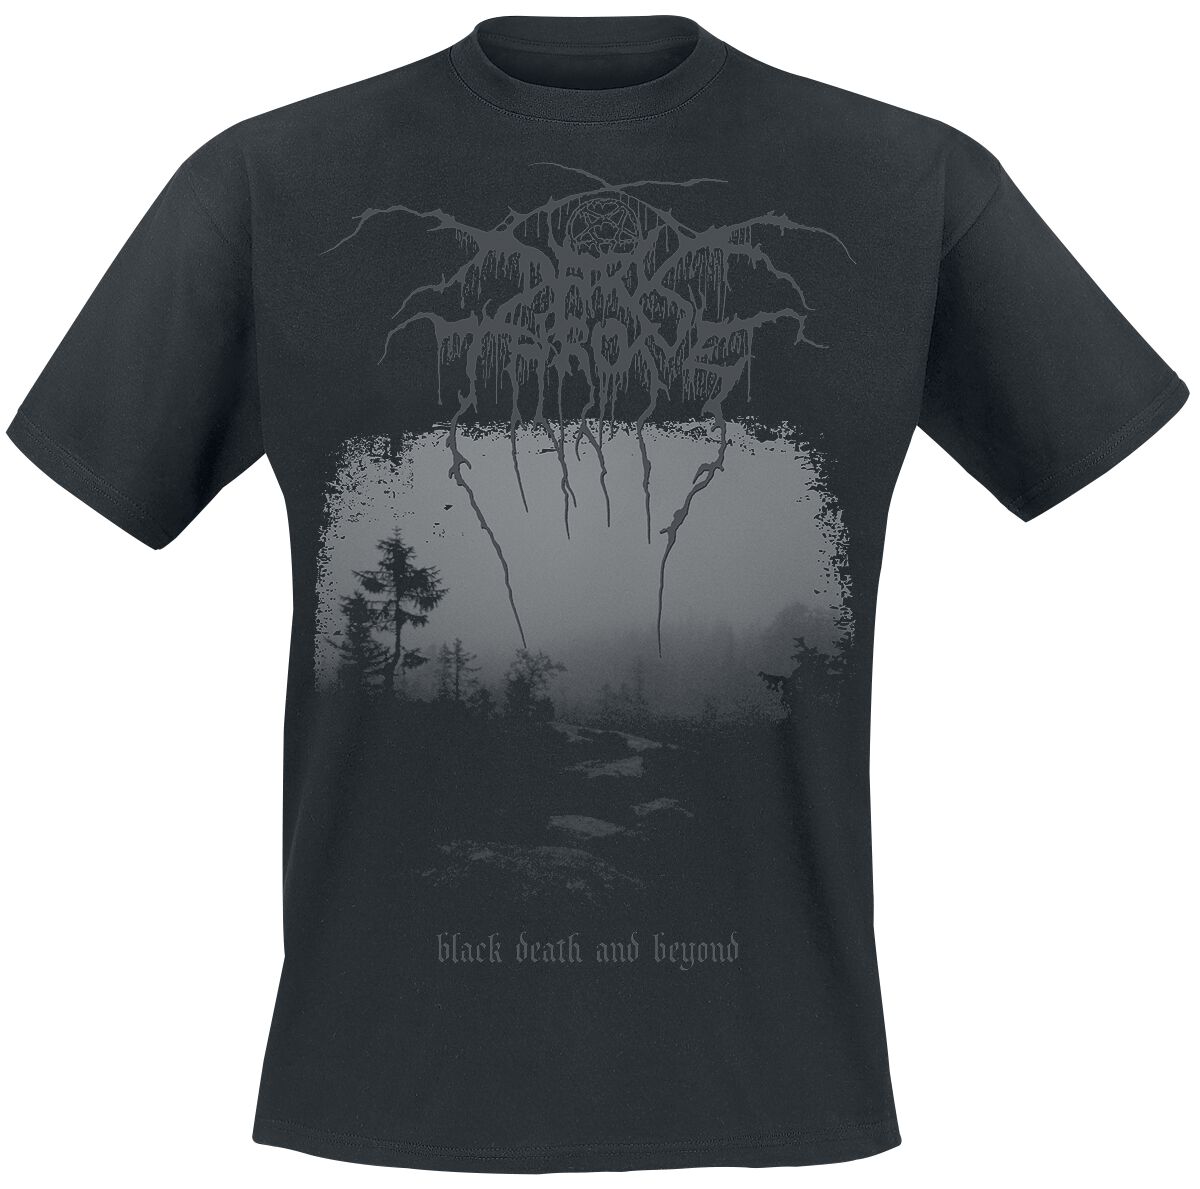 Darkthrone T-Shirt - Black death and beyond - S bis XL - für Männer - Größe XL - schwarz  - Lizenziertes Merchandise!